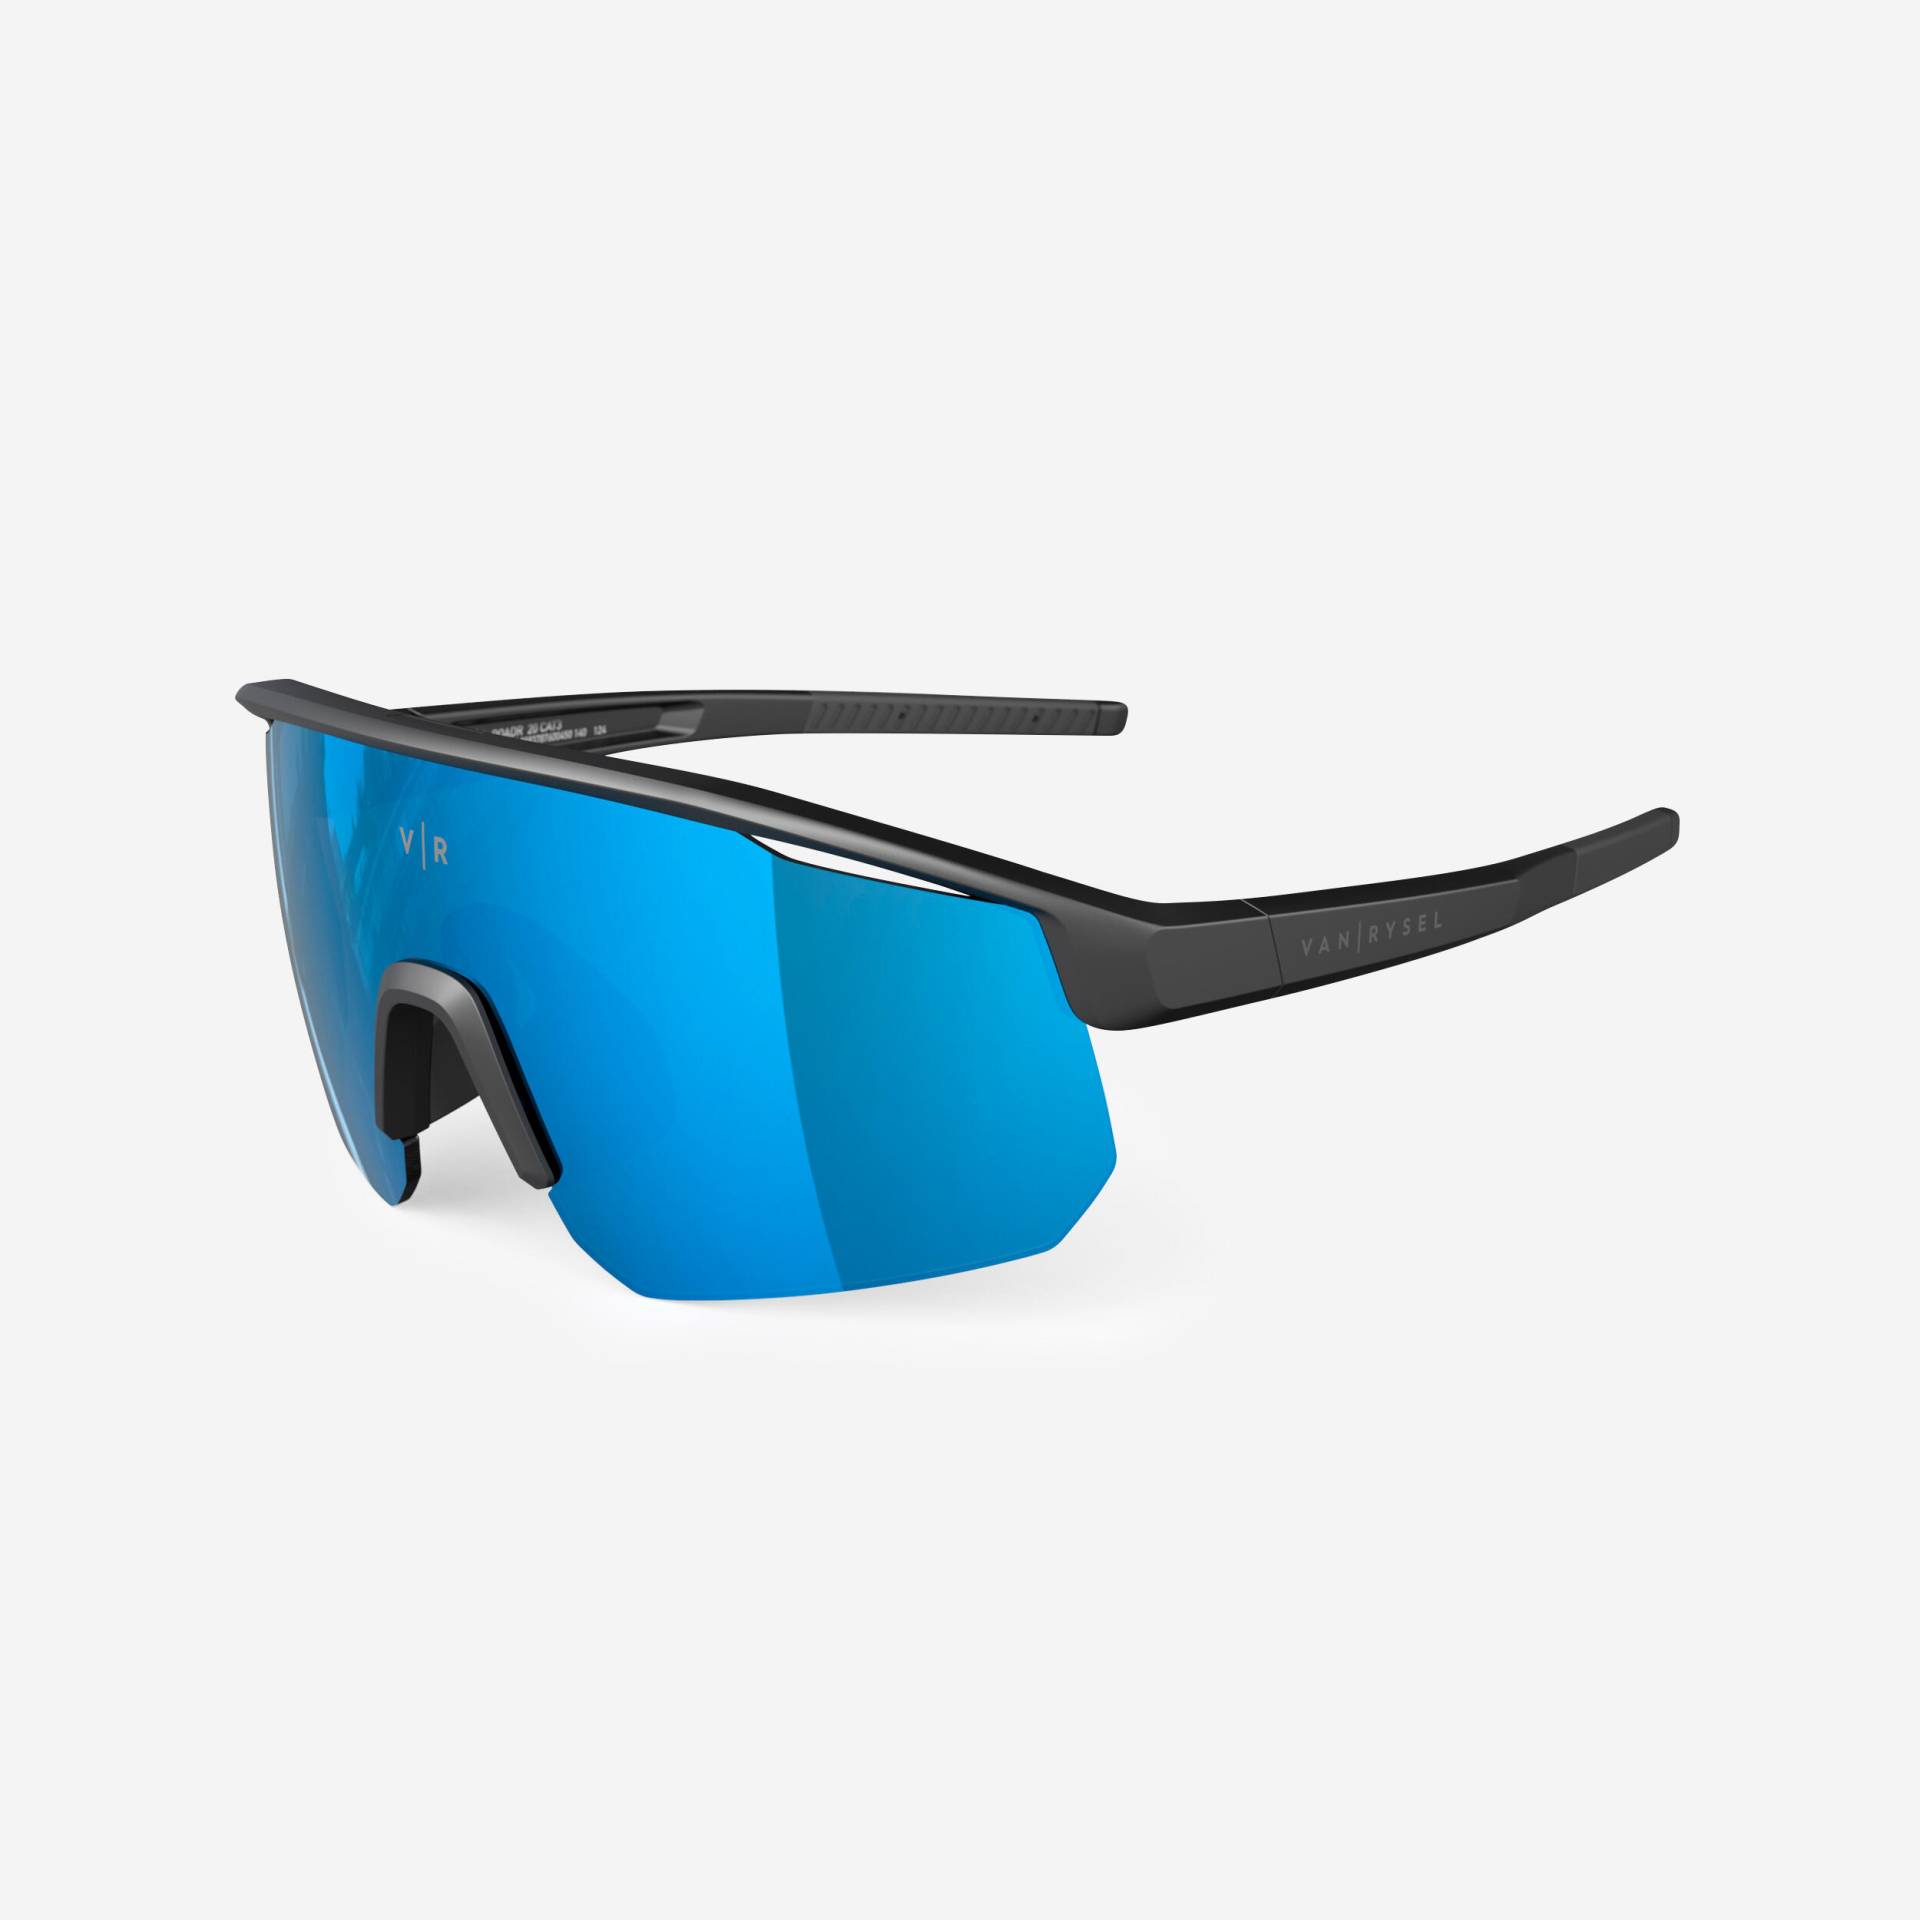 Fahrradbrille Perf 500 Light Kategorie 3 Damen/Herren schwarz/blau von VAN RYSEL